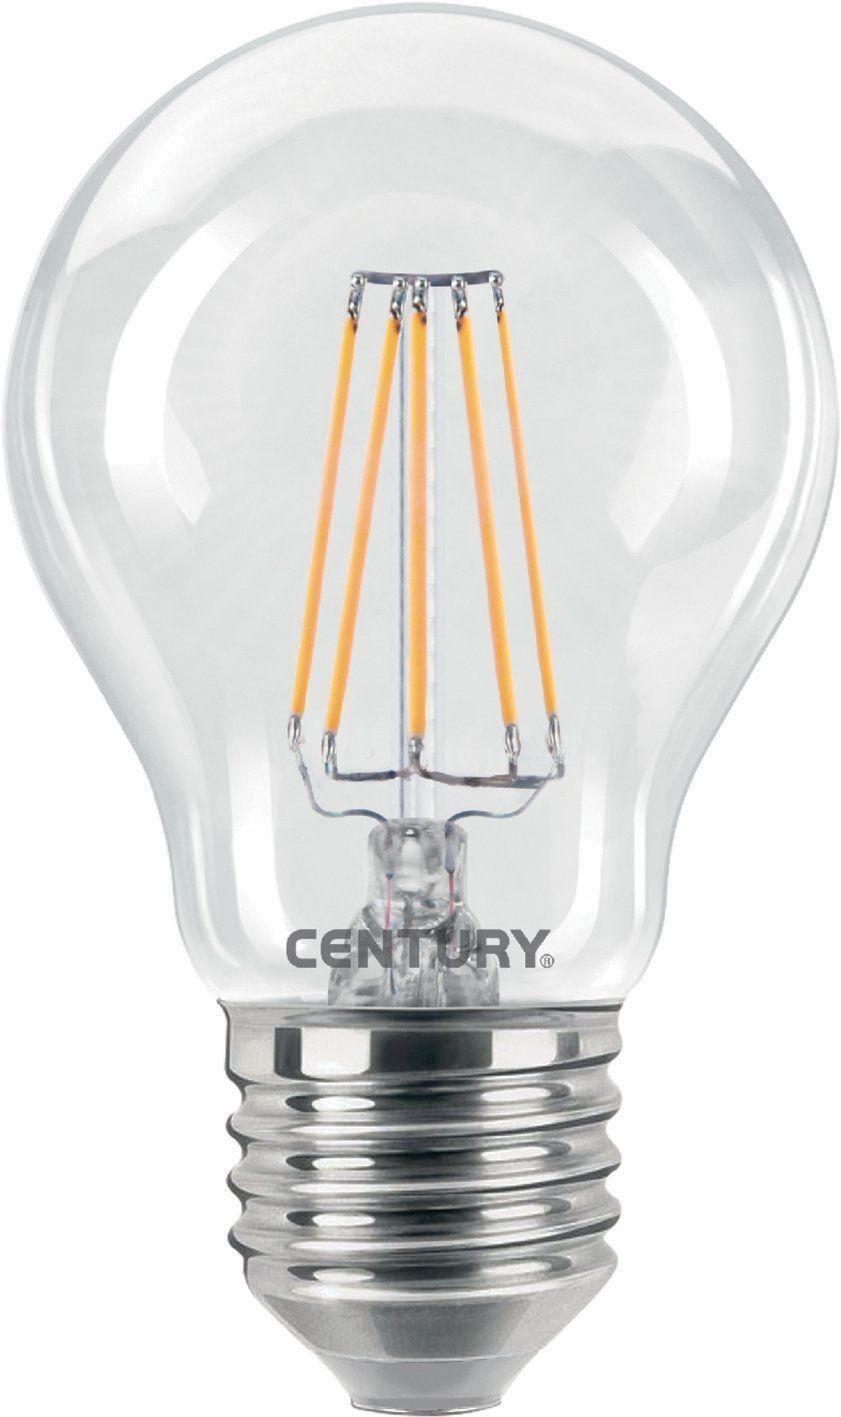 century century incanto goccia - led bulbs (a+, warm white, transparent, 50/60) ing3-082727